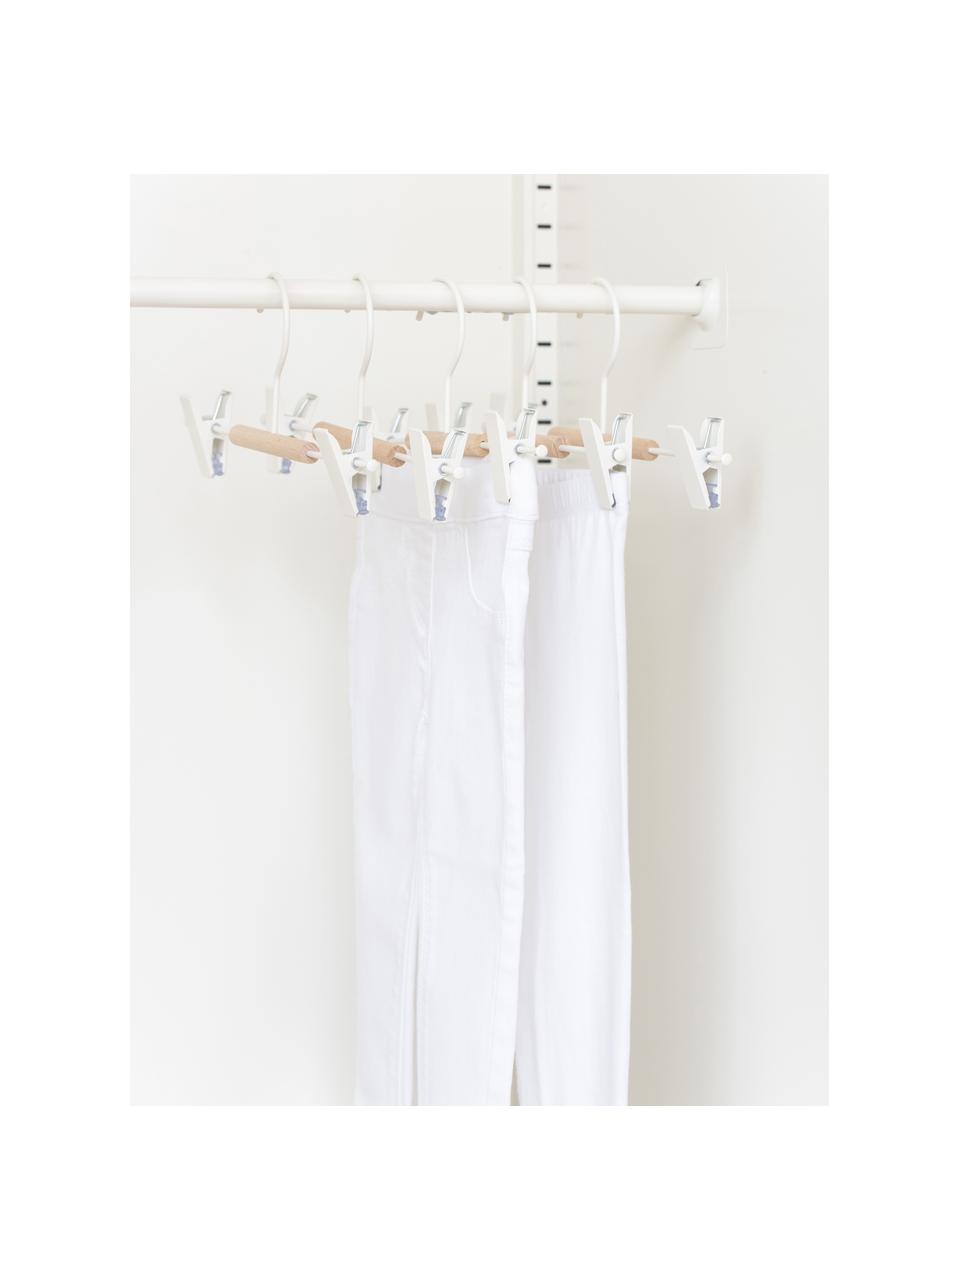 Wieszak na ubrania Kids Clip, 5 szt., Drewno naturalne, stal malowana proszkowo, Biały, S 25 x W 12 cm